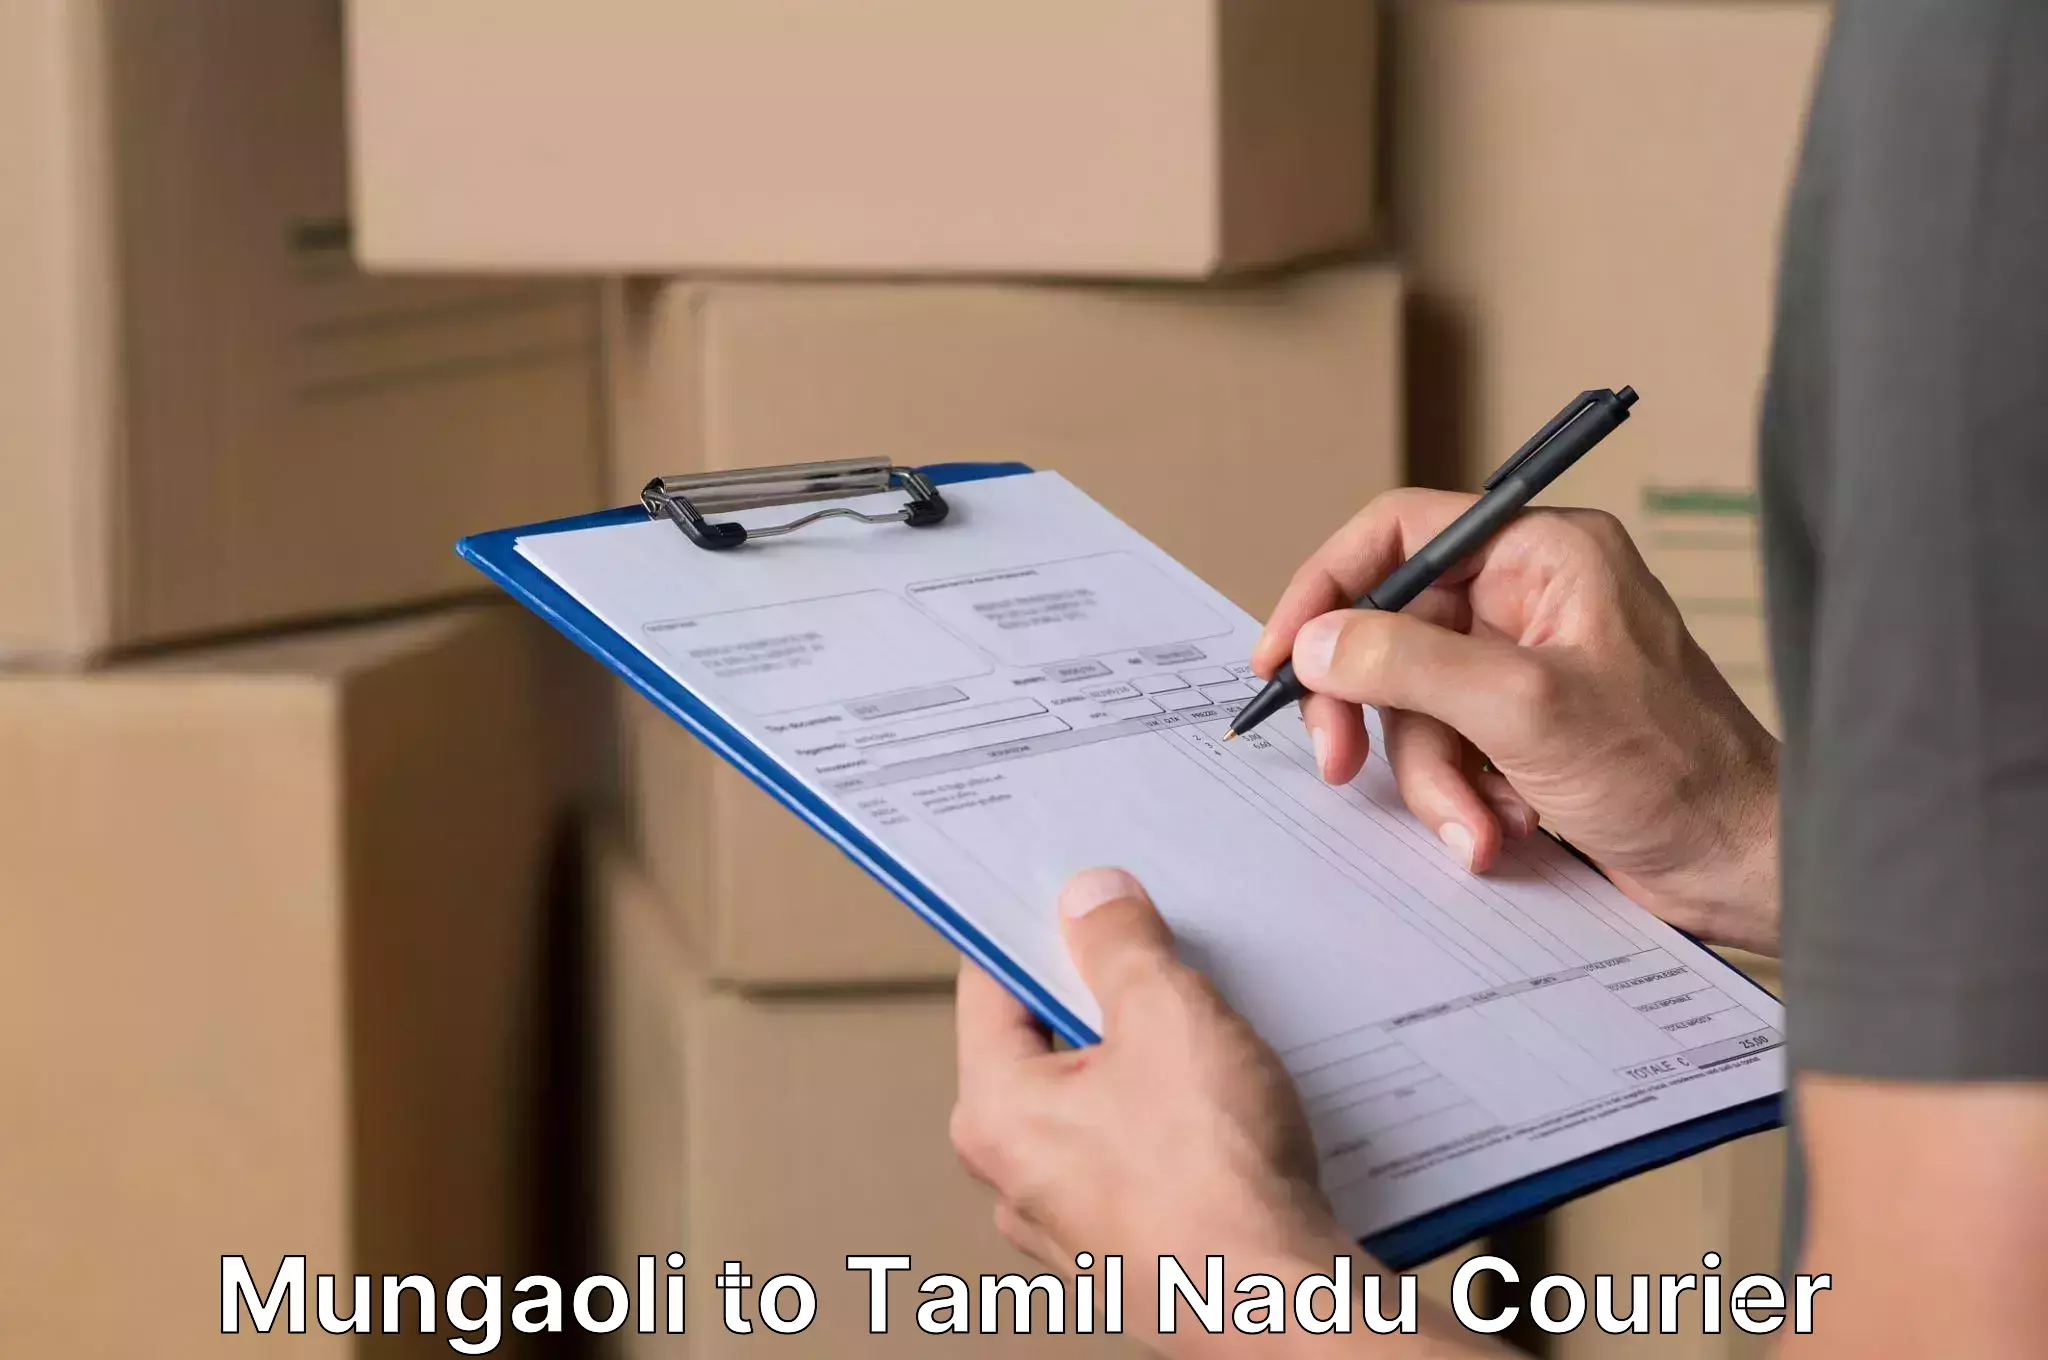 Furniture transport professionals Mungaoli to Tamil Nadu